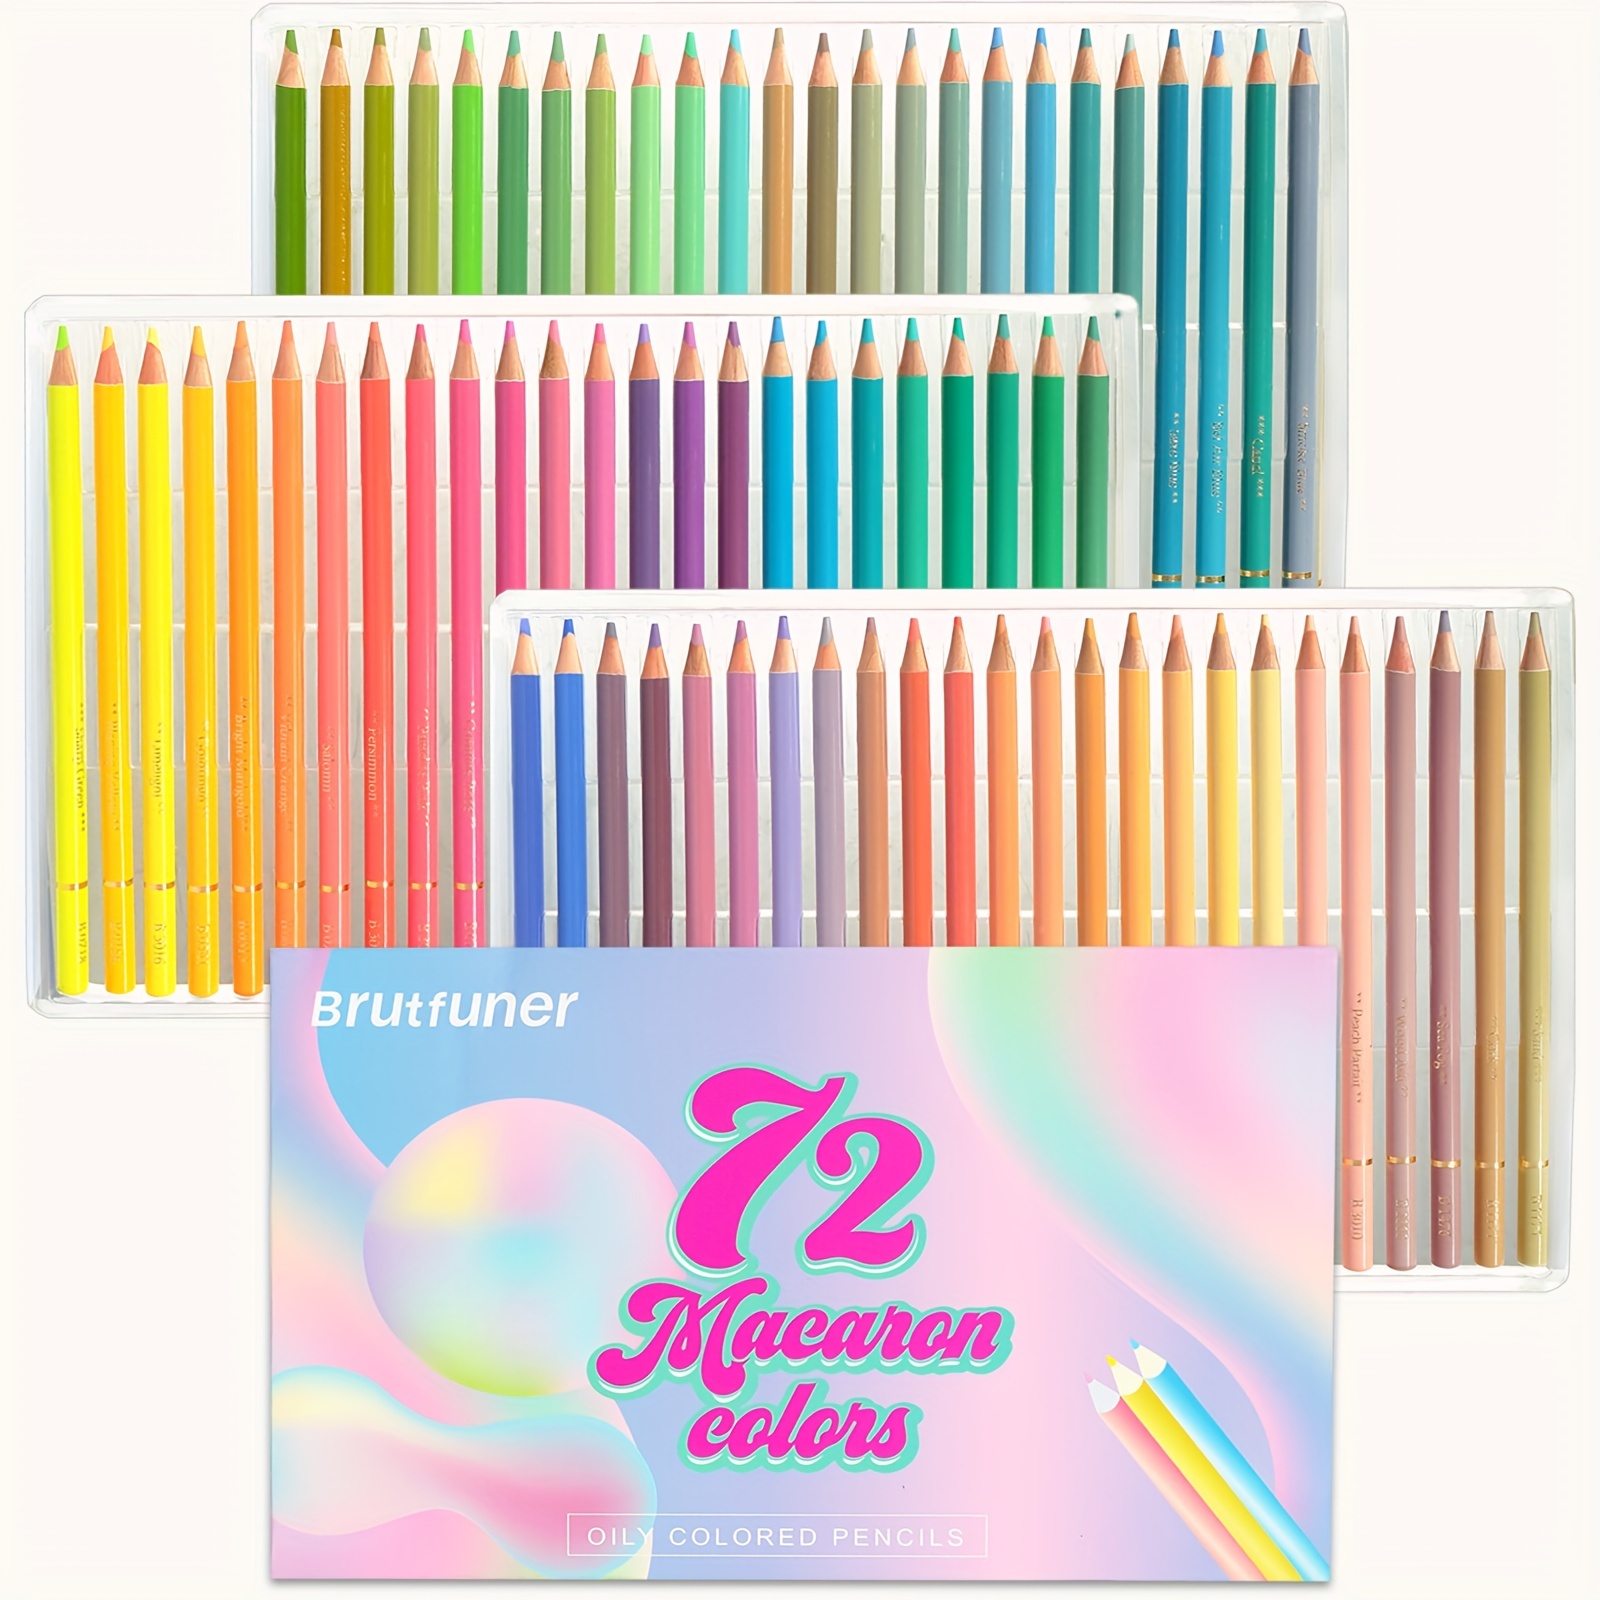 Boite de 72 Crayons de Couleur pour Adultes et Professionnels